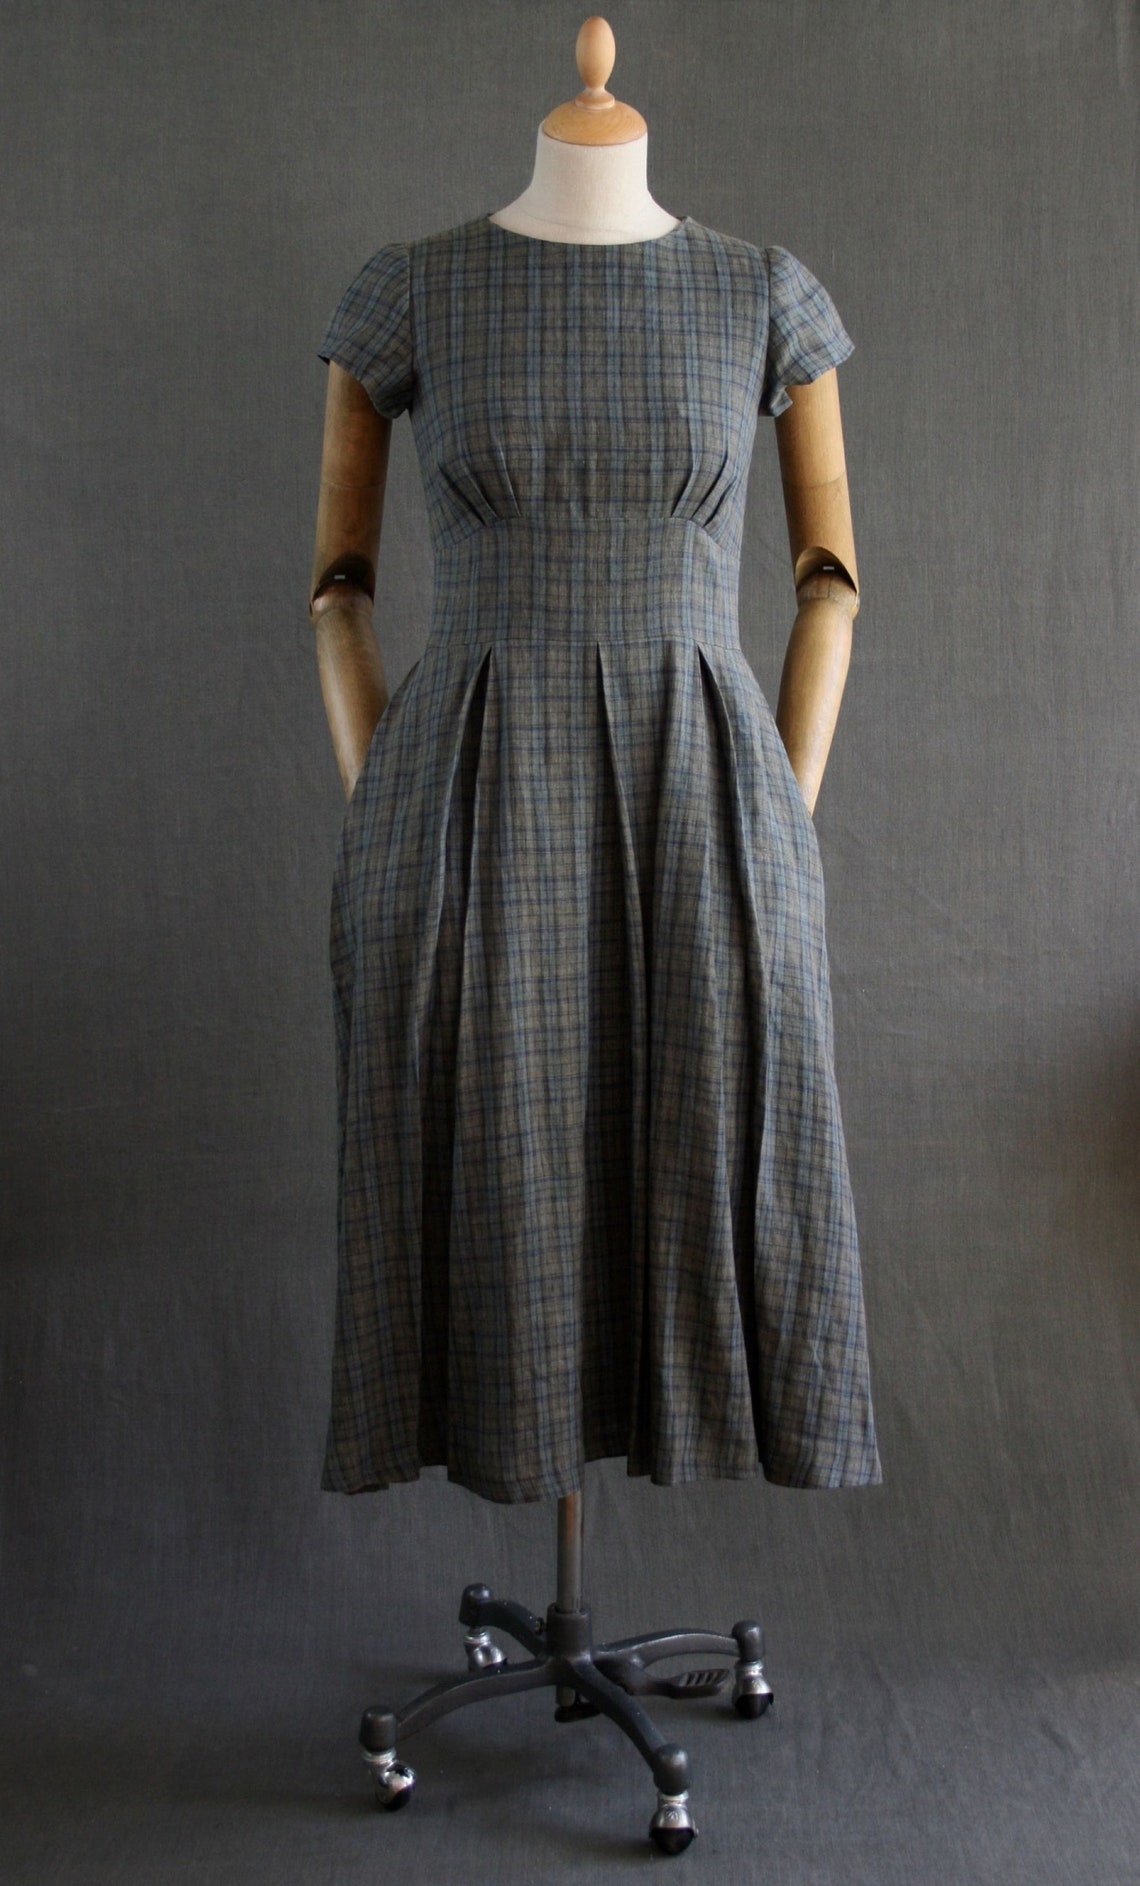 Liberty Lawn Dress Classic Style Sustainable Clothing - Etsy UK